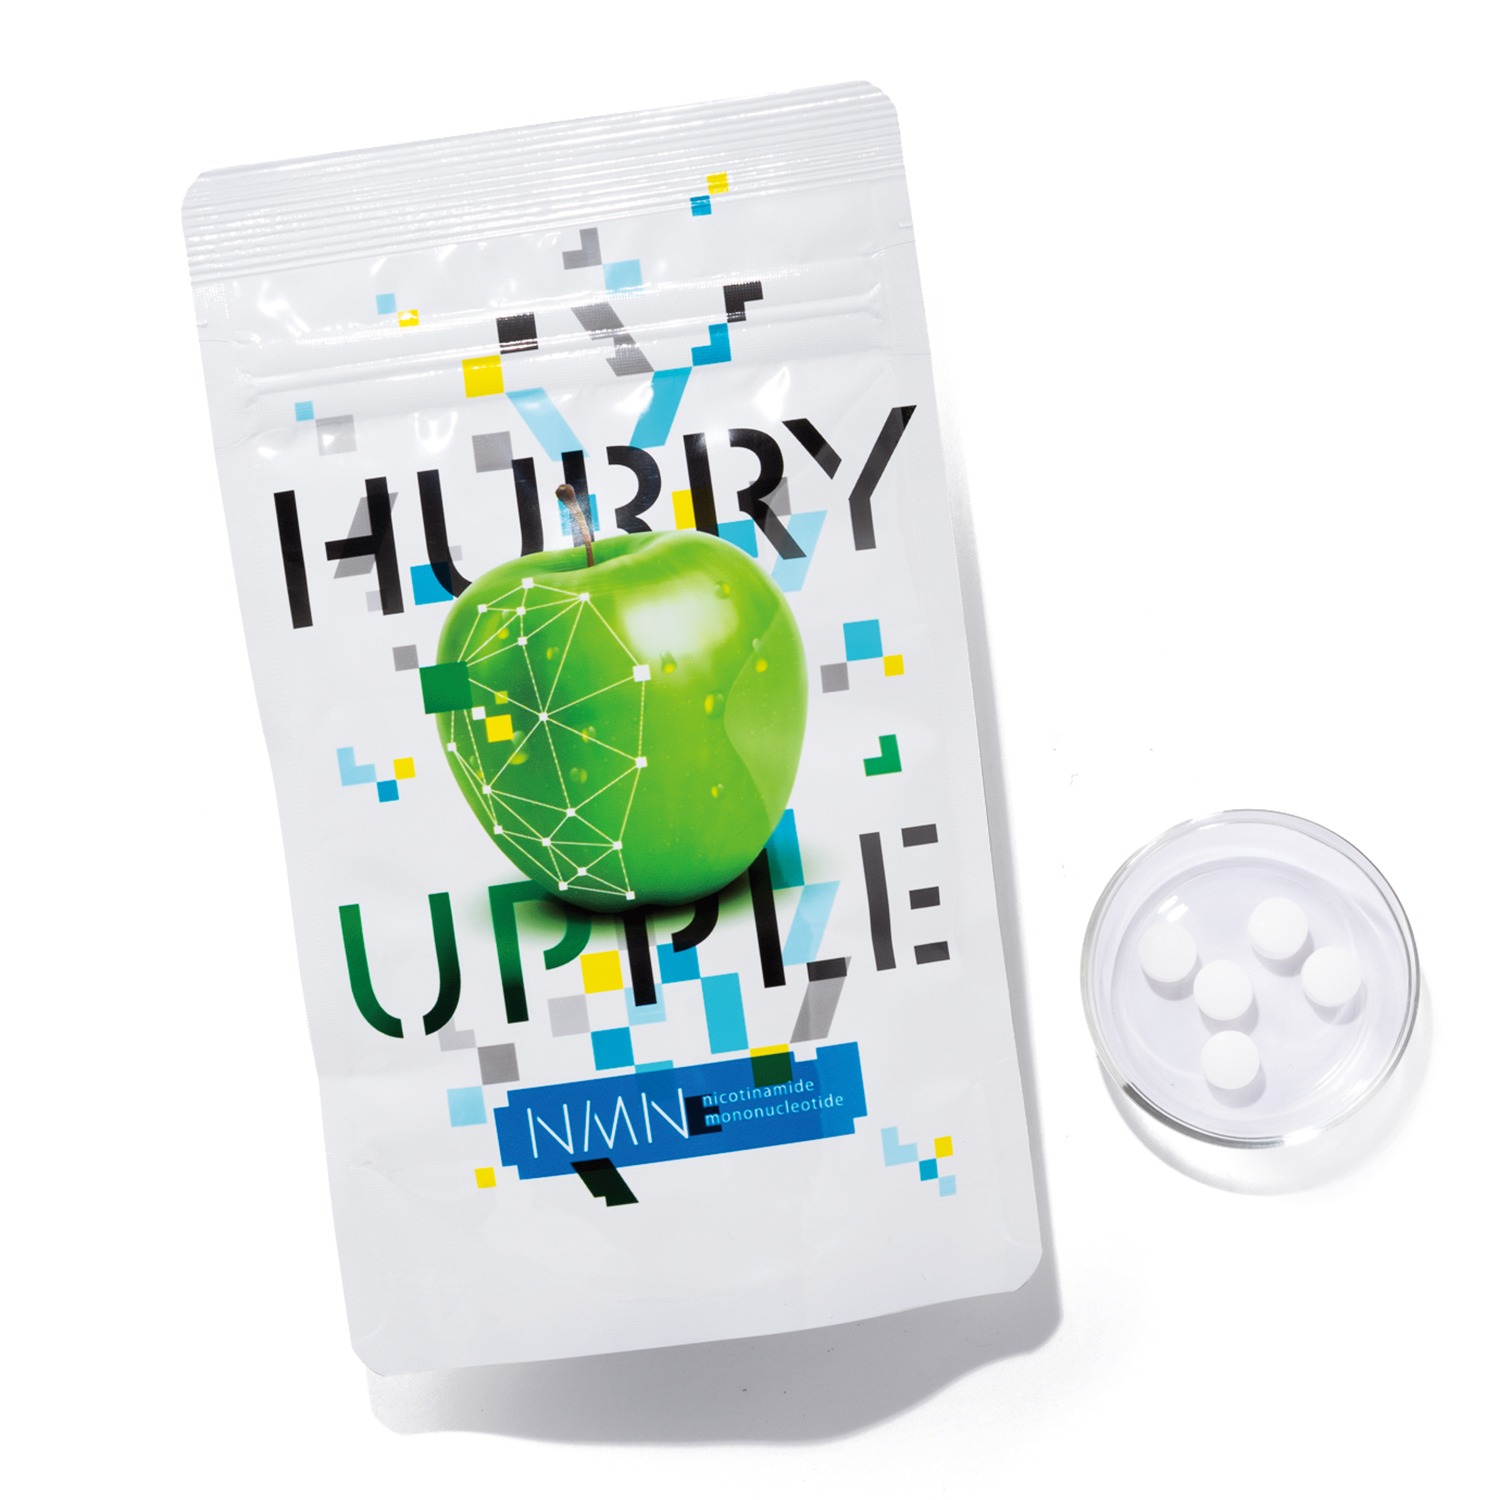 国交省東北地方整備局 ハリーアップル 2袋セット 健康用品